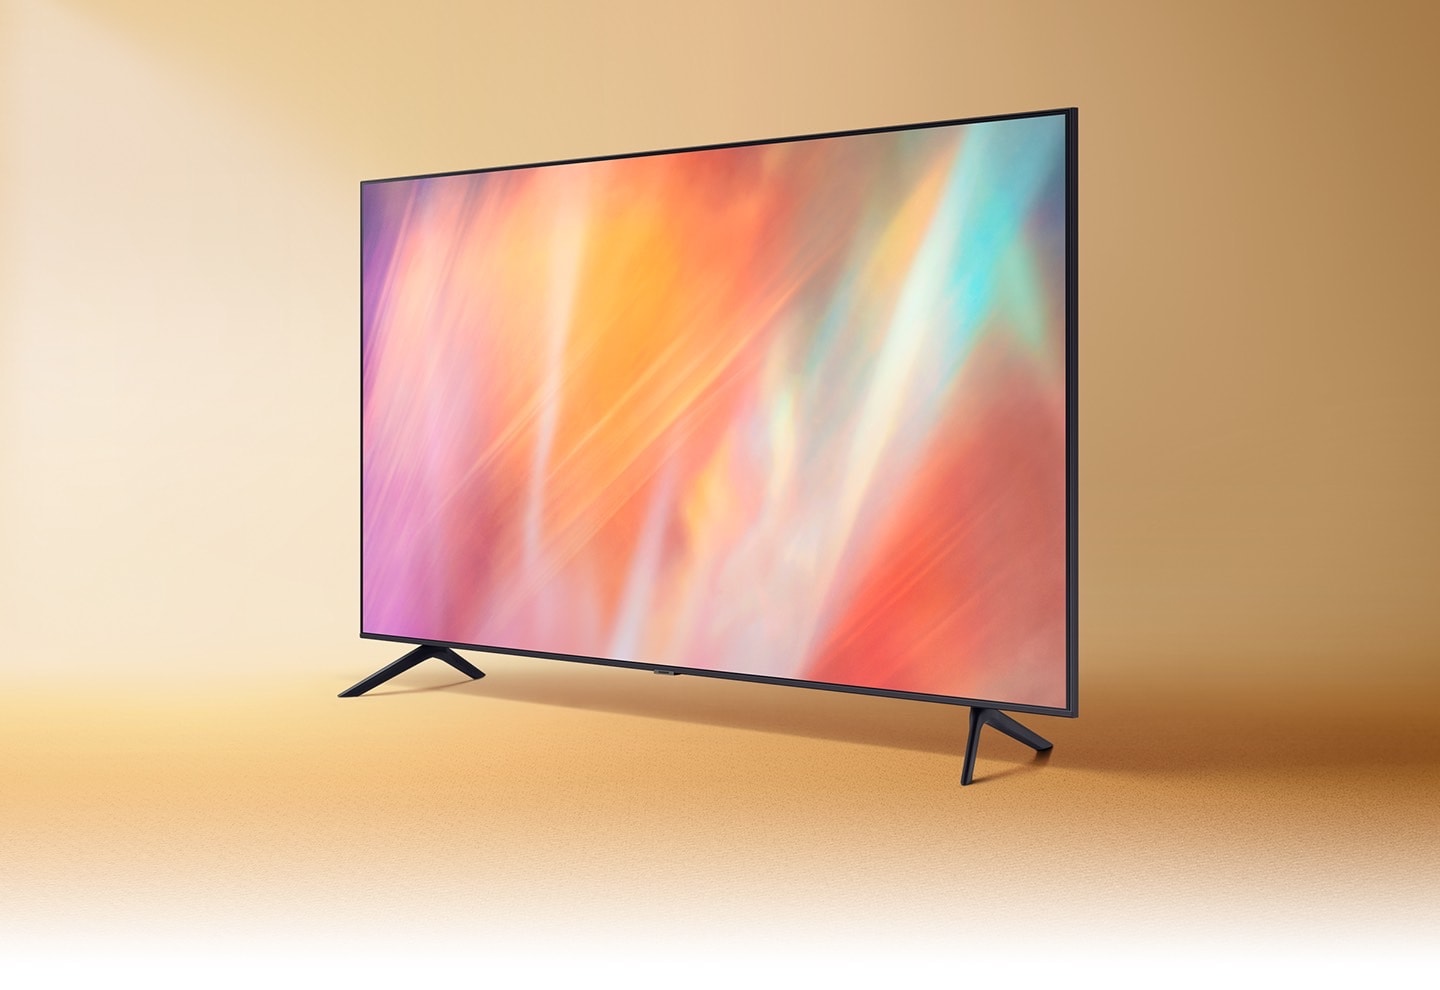 Telewizory Samsung AU7102 to realistyczne, żywe kolory, które zachwycają. Przekonaj się sam!